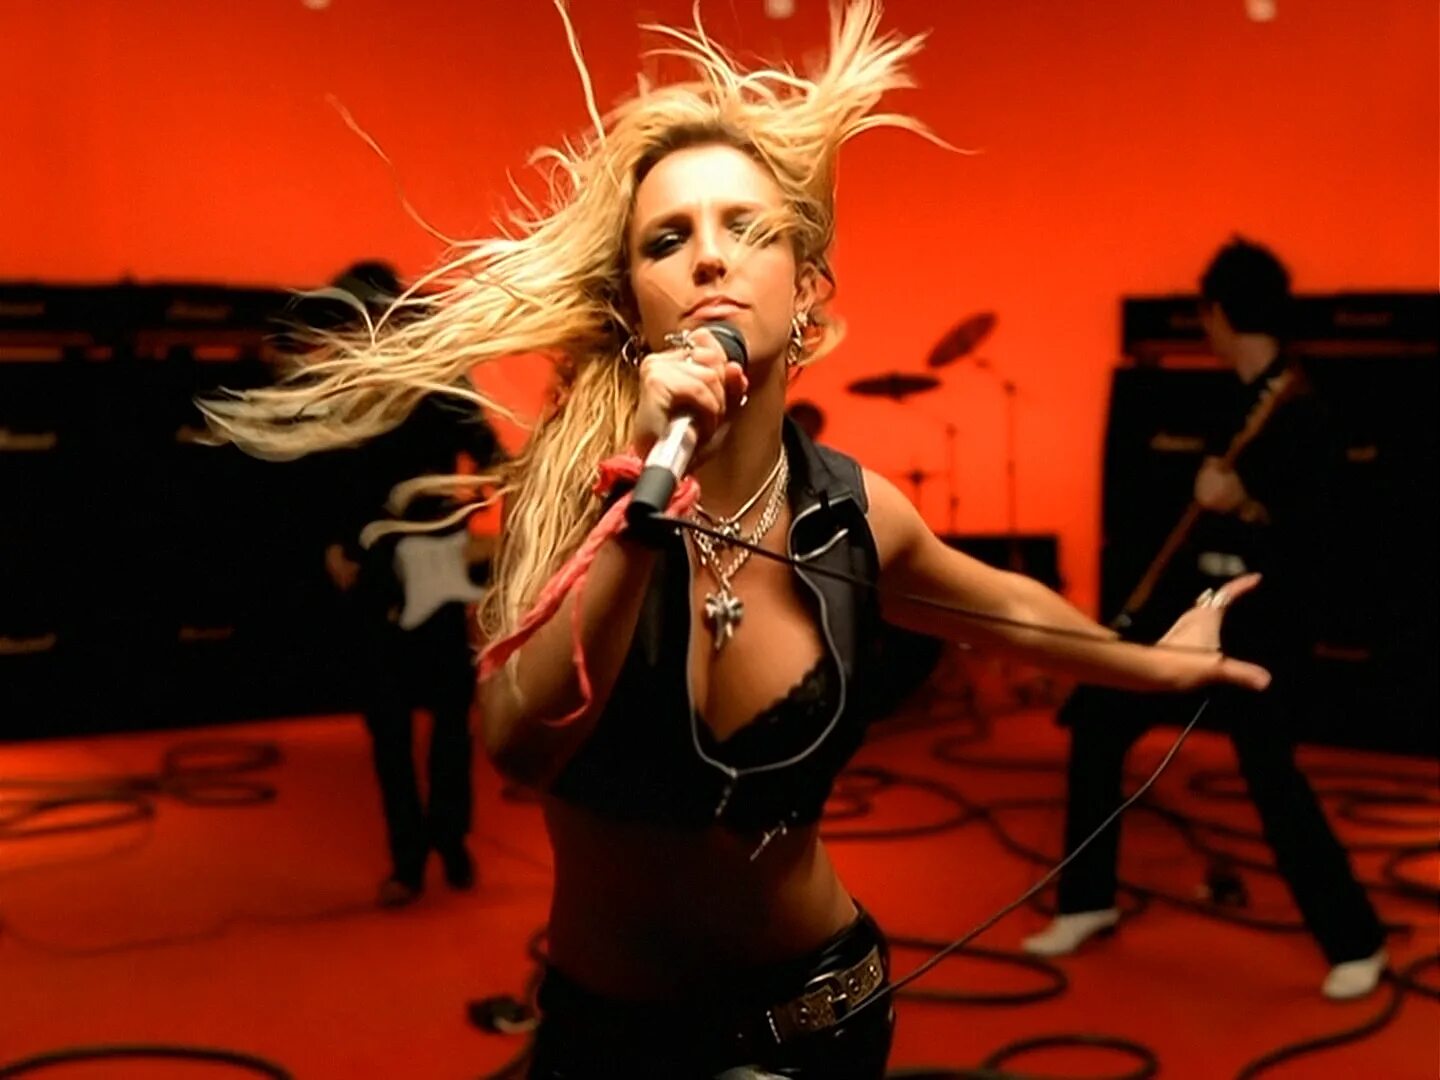 Rock i roll. Бритни Спирс рок н ролл. I Love Rock'n'Roll Britney Spears. I Love Rock n Roll Бритни Спирс. Ай лав рок ролл Бритни Спирс.